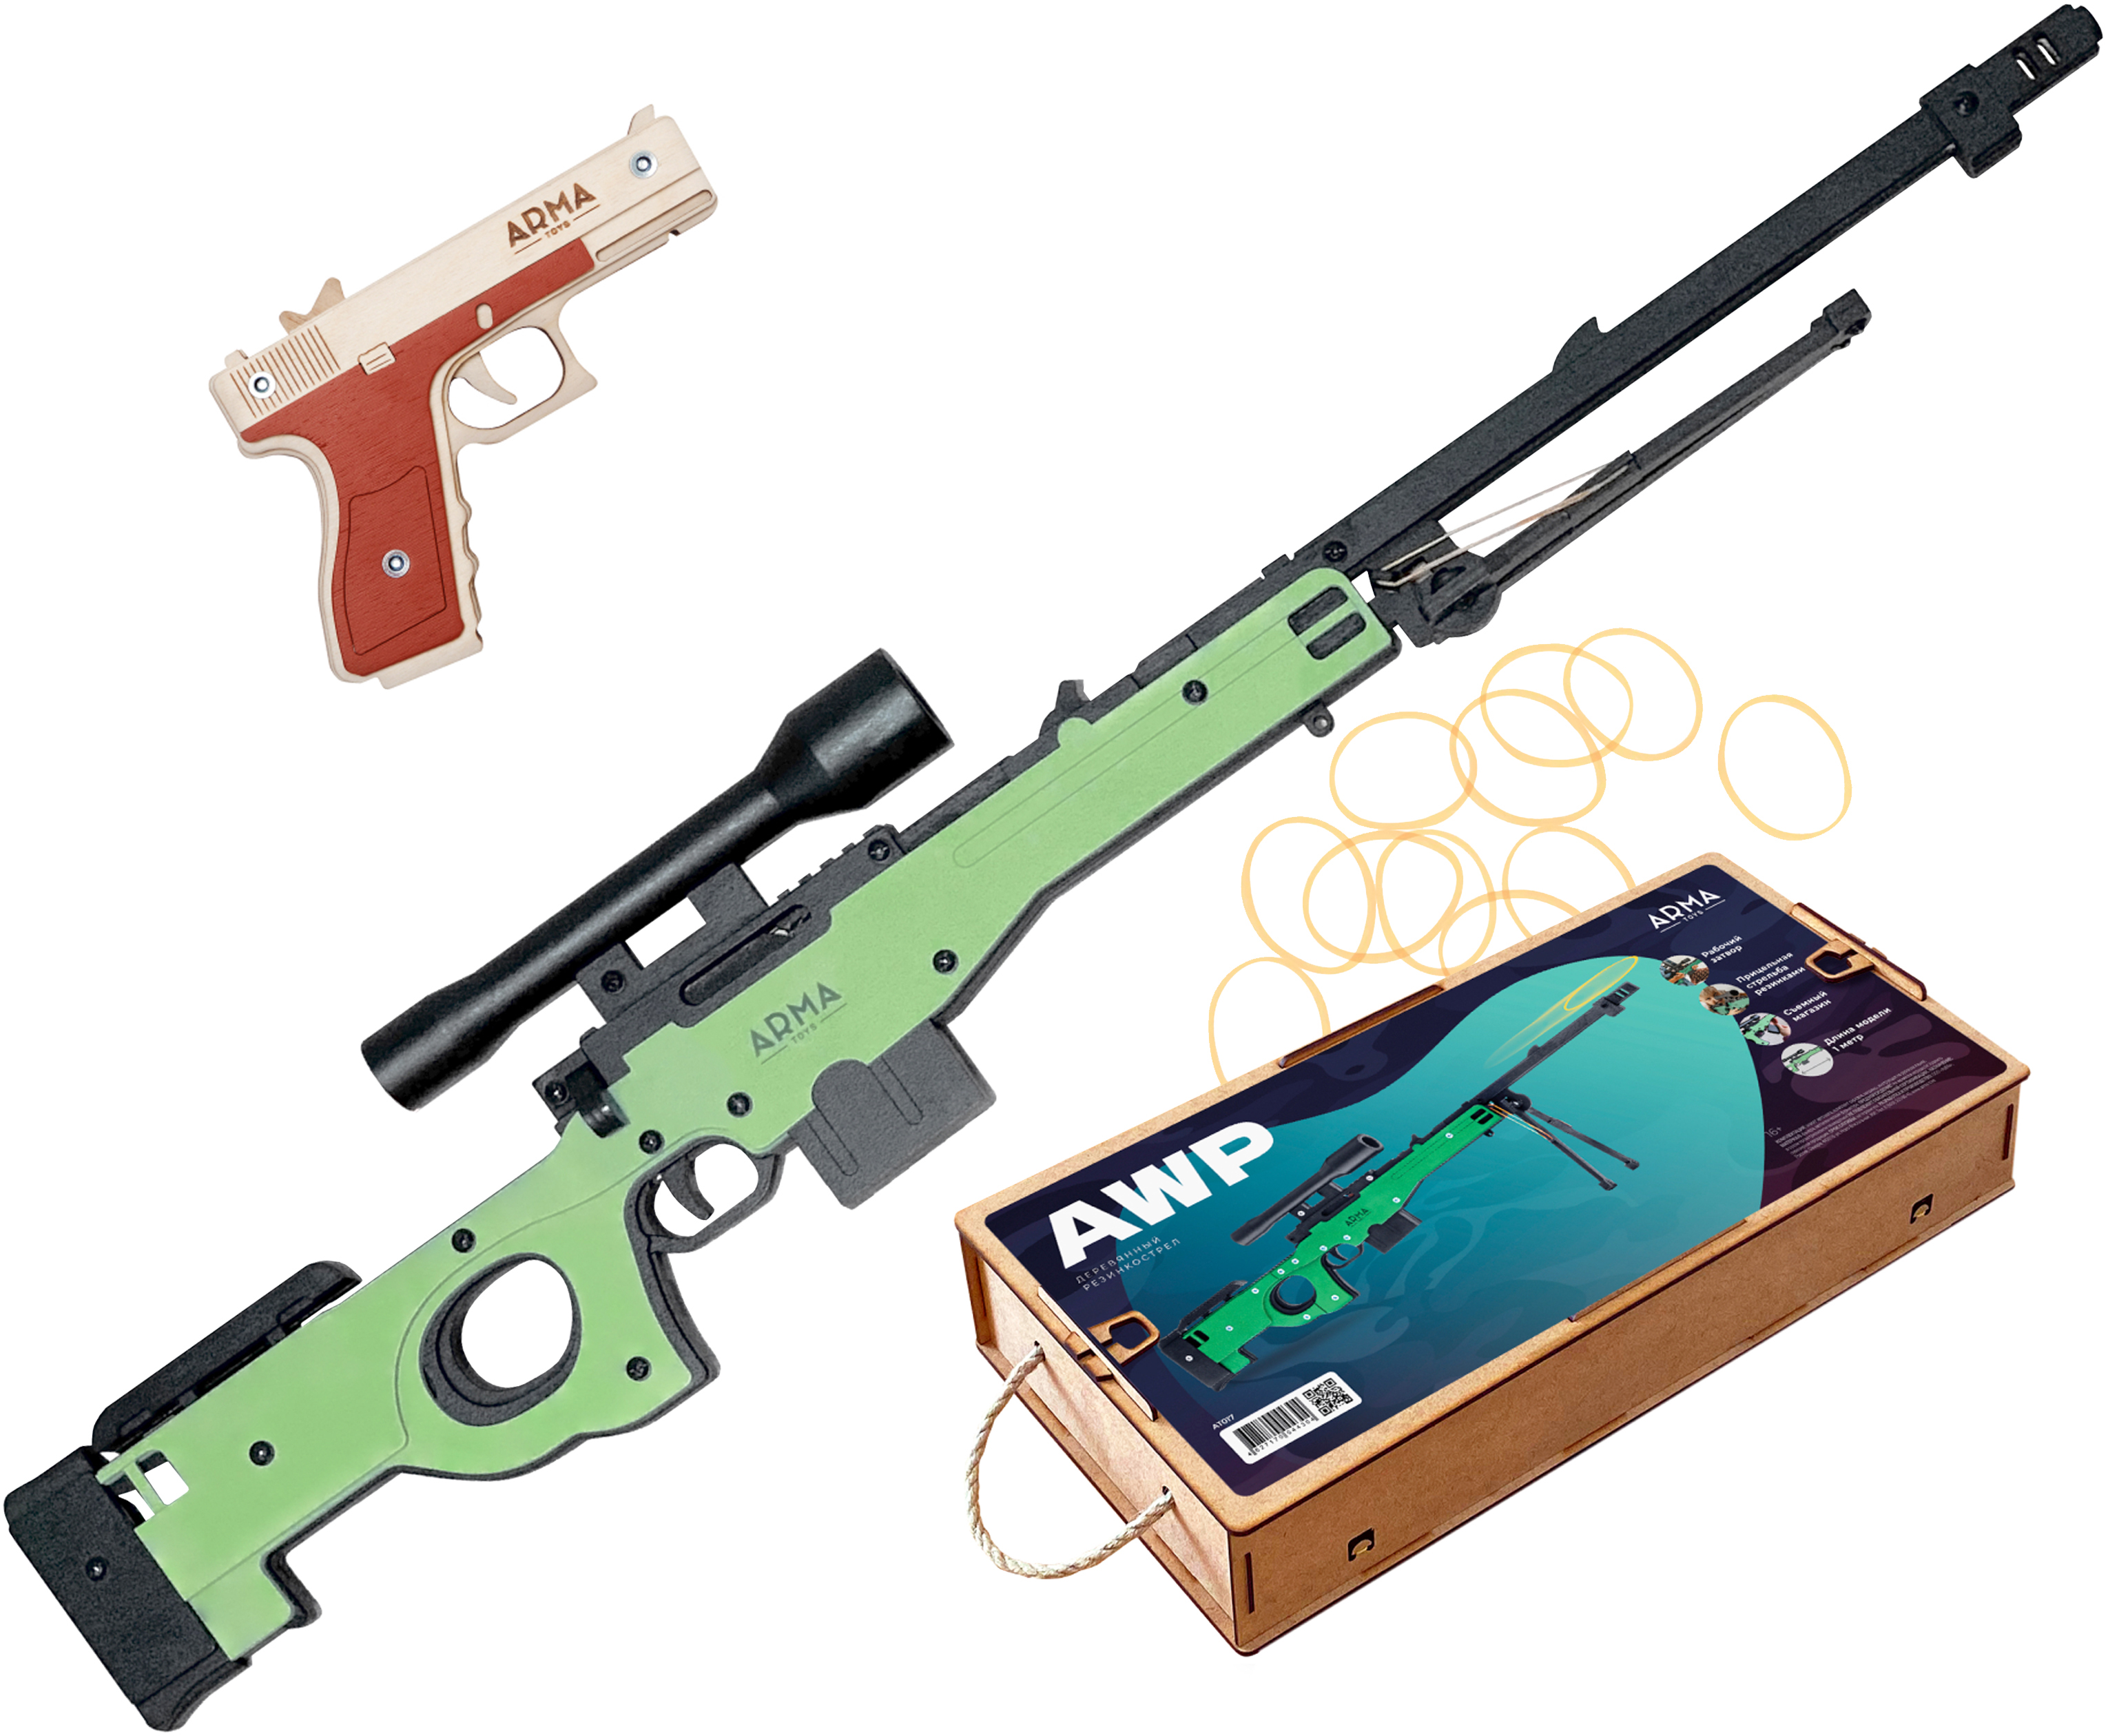 Набор игрушечных резинкострелов Arma toys Спецназ полиции винтовка AWP, пистолет Глок набор резинкострелов arma toys спецназ фбр 2 винтовка m4 пистолет глок at510